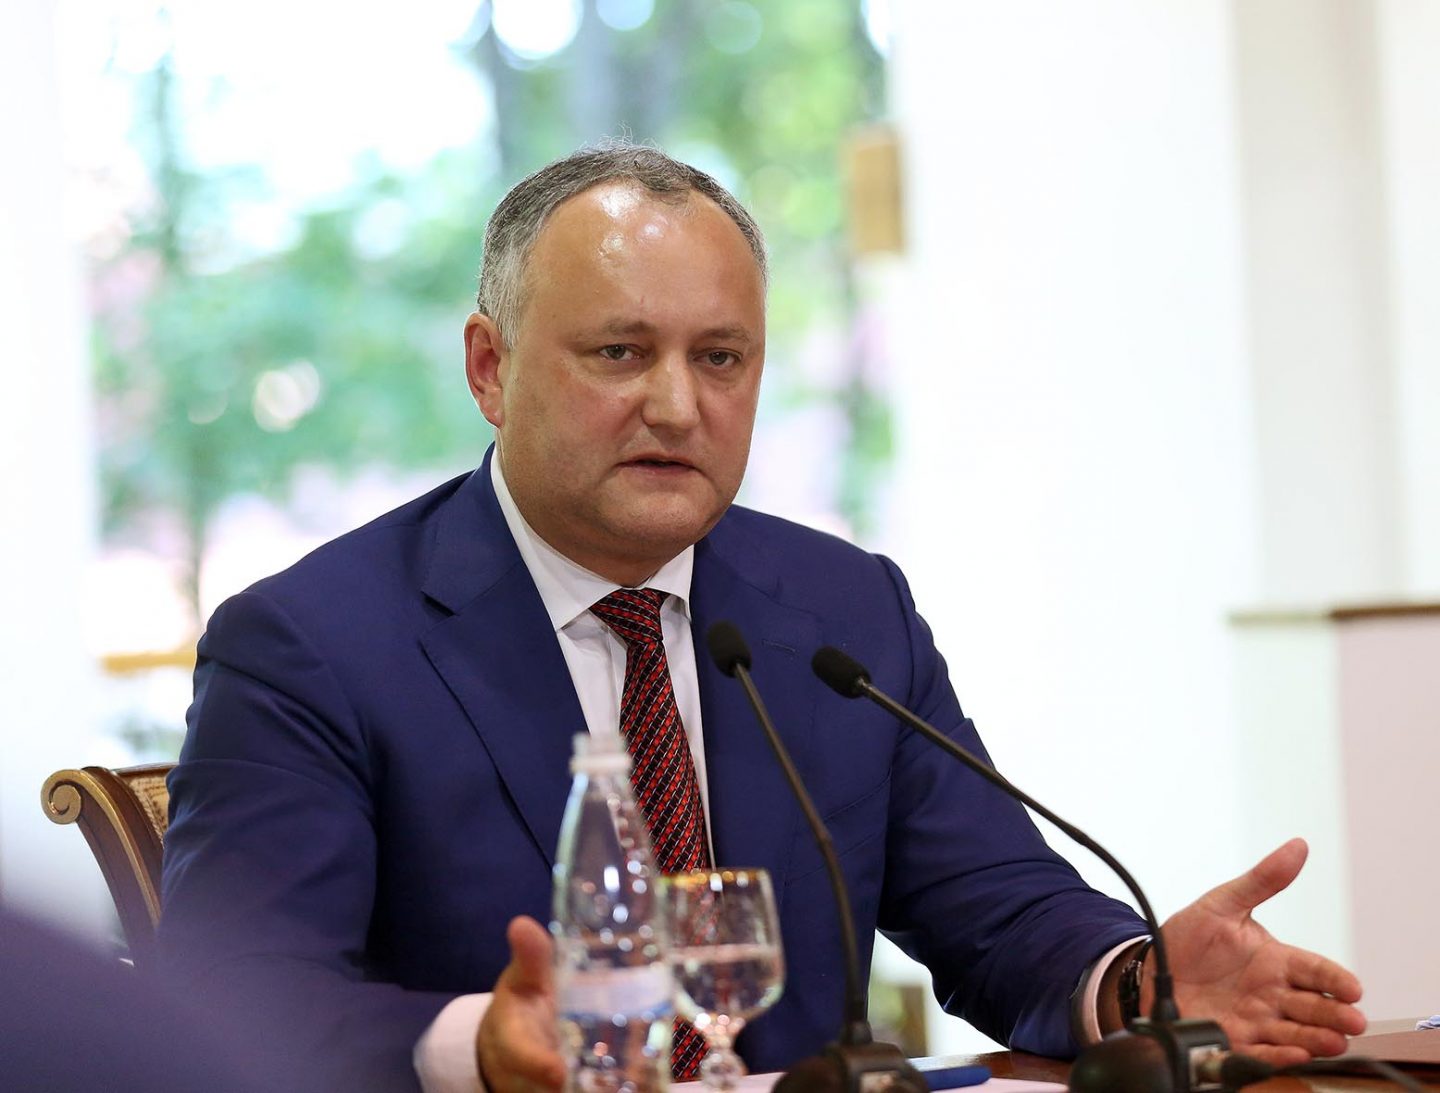 VIDEO // Igor Dodon: Împreună vom reuși să depășim toate crizele și provocările